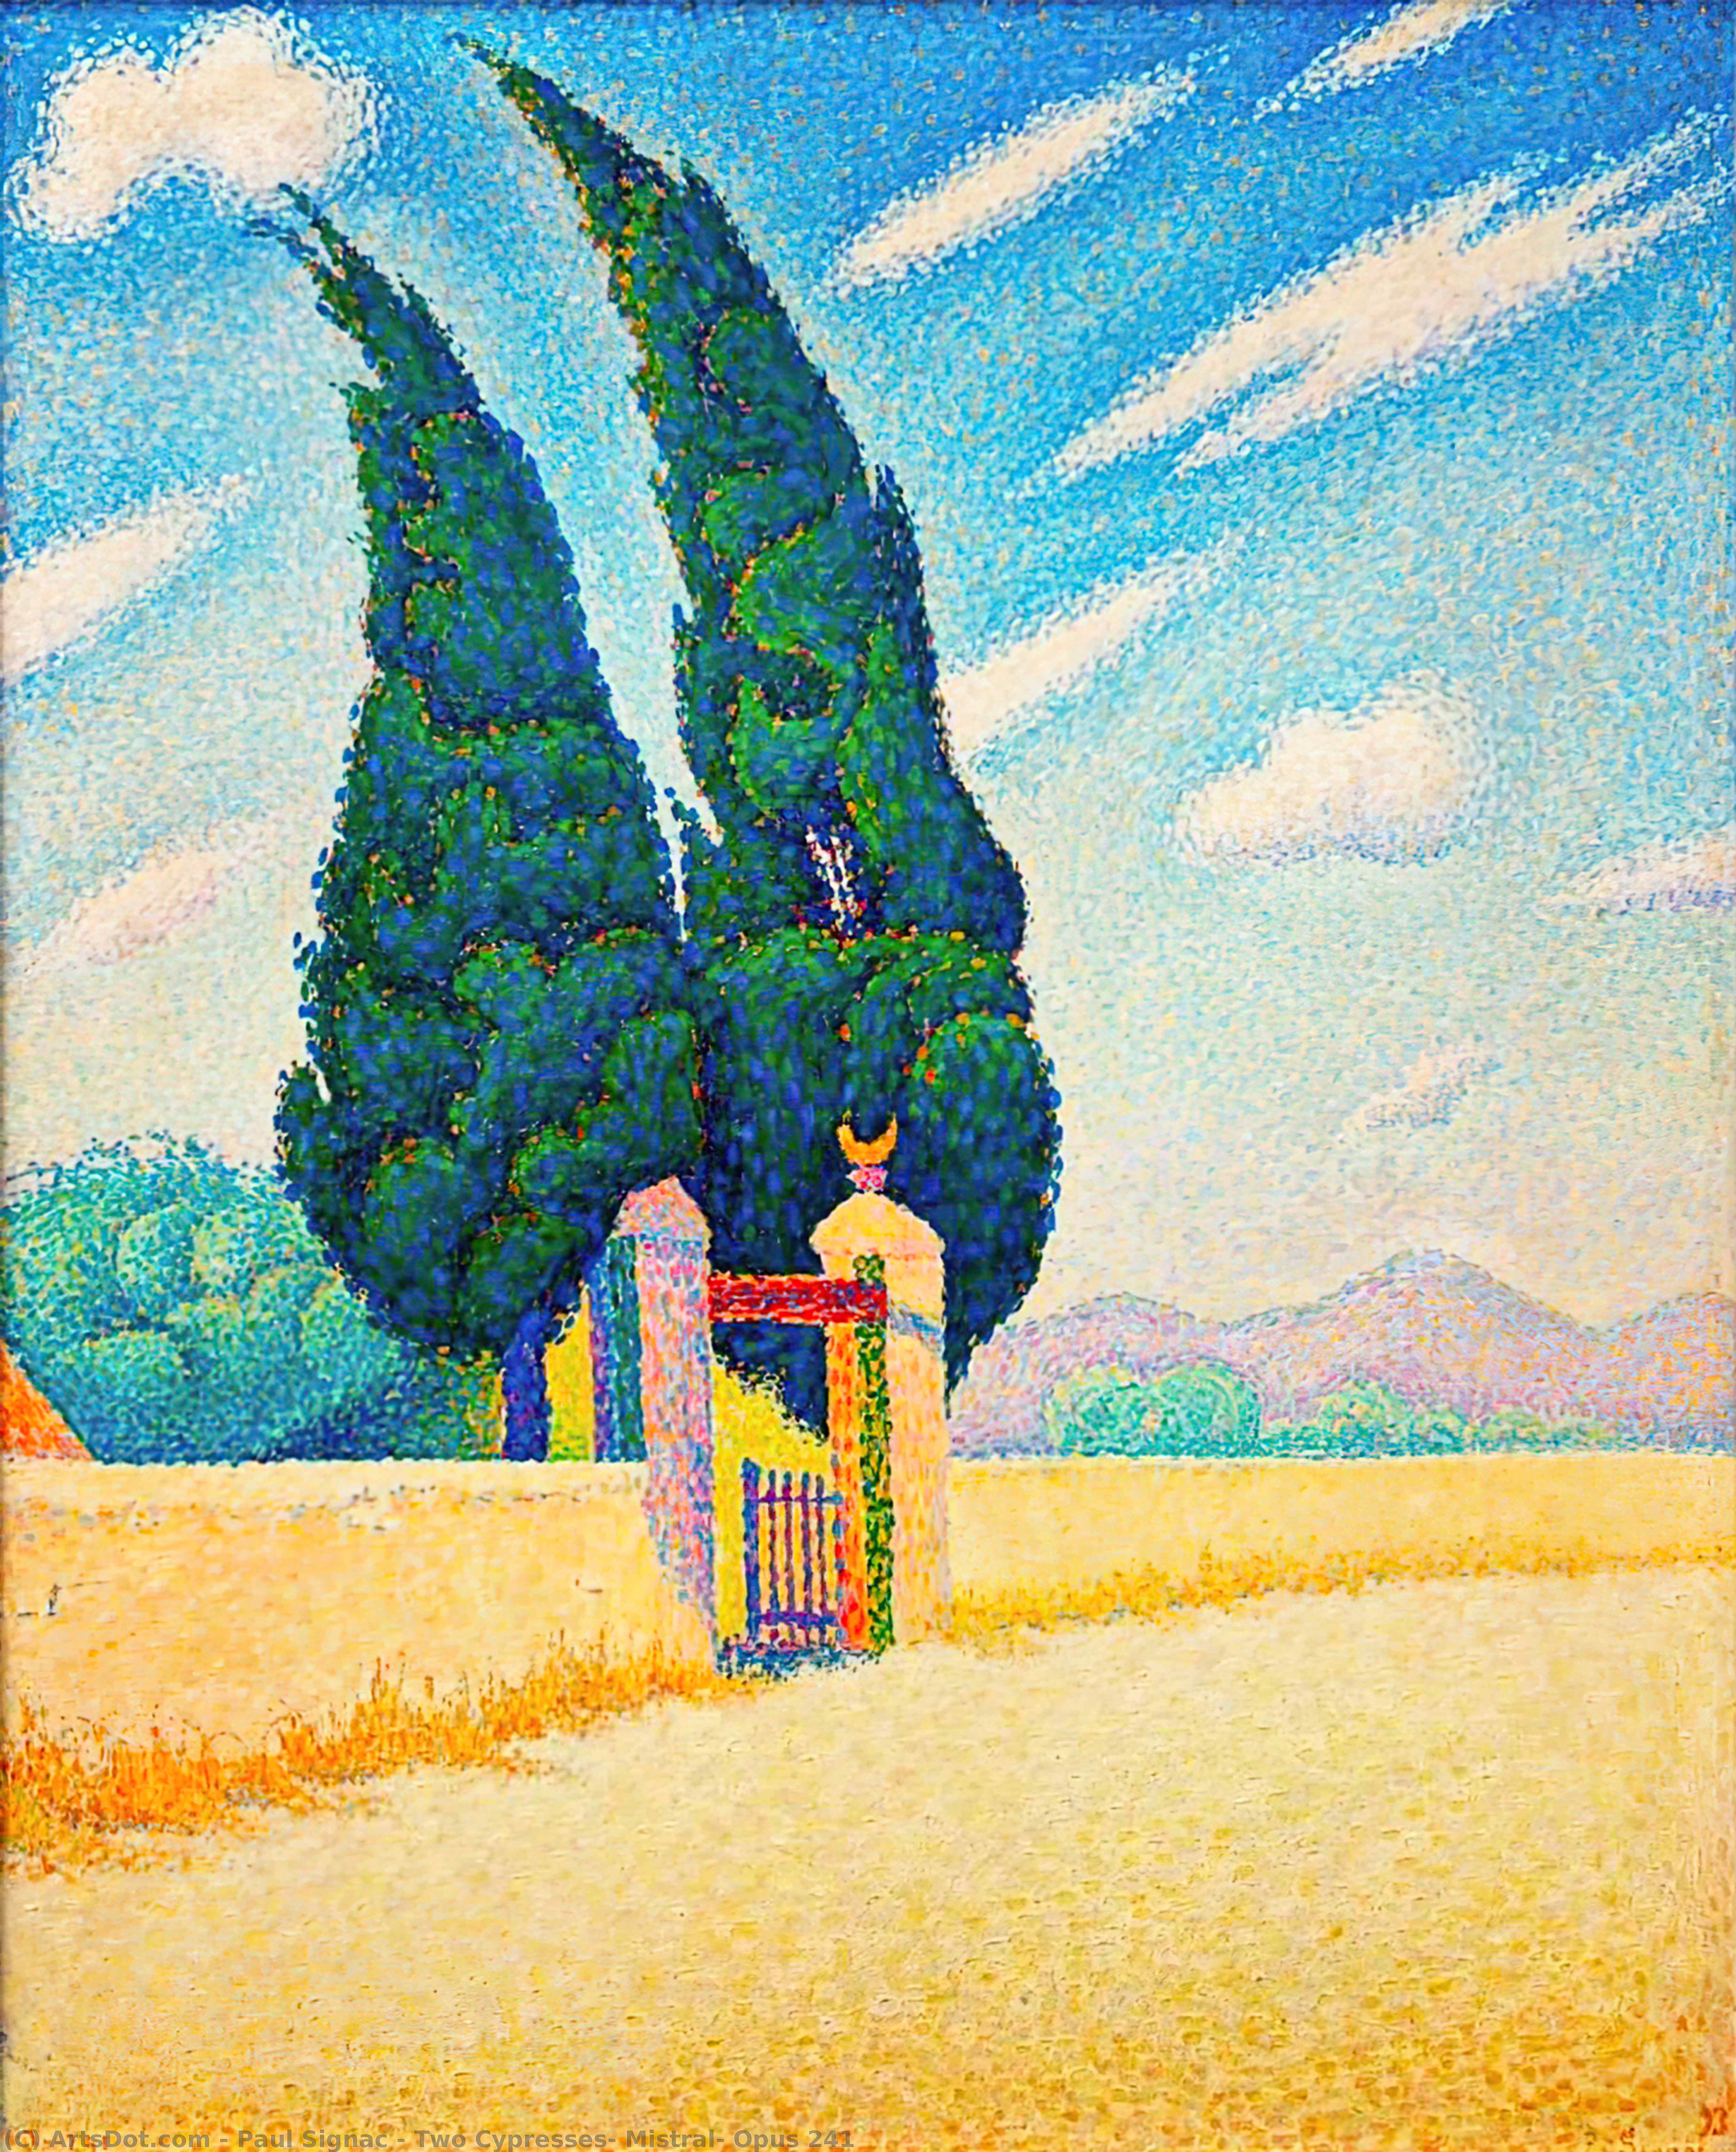 WikiOO.org - Εγκυκλοπαίδεια Καλών Τεχνών - Ζωγραφική, έργα τέχνης Paul Signac - Two Cypresses, Mistral, Opus 241